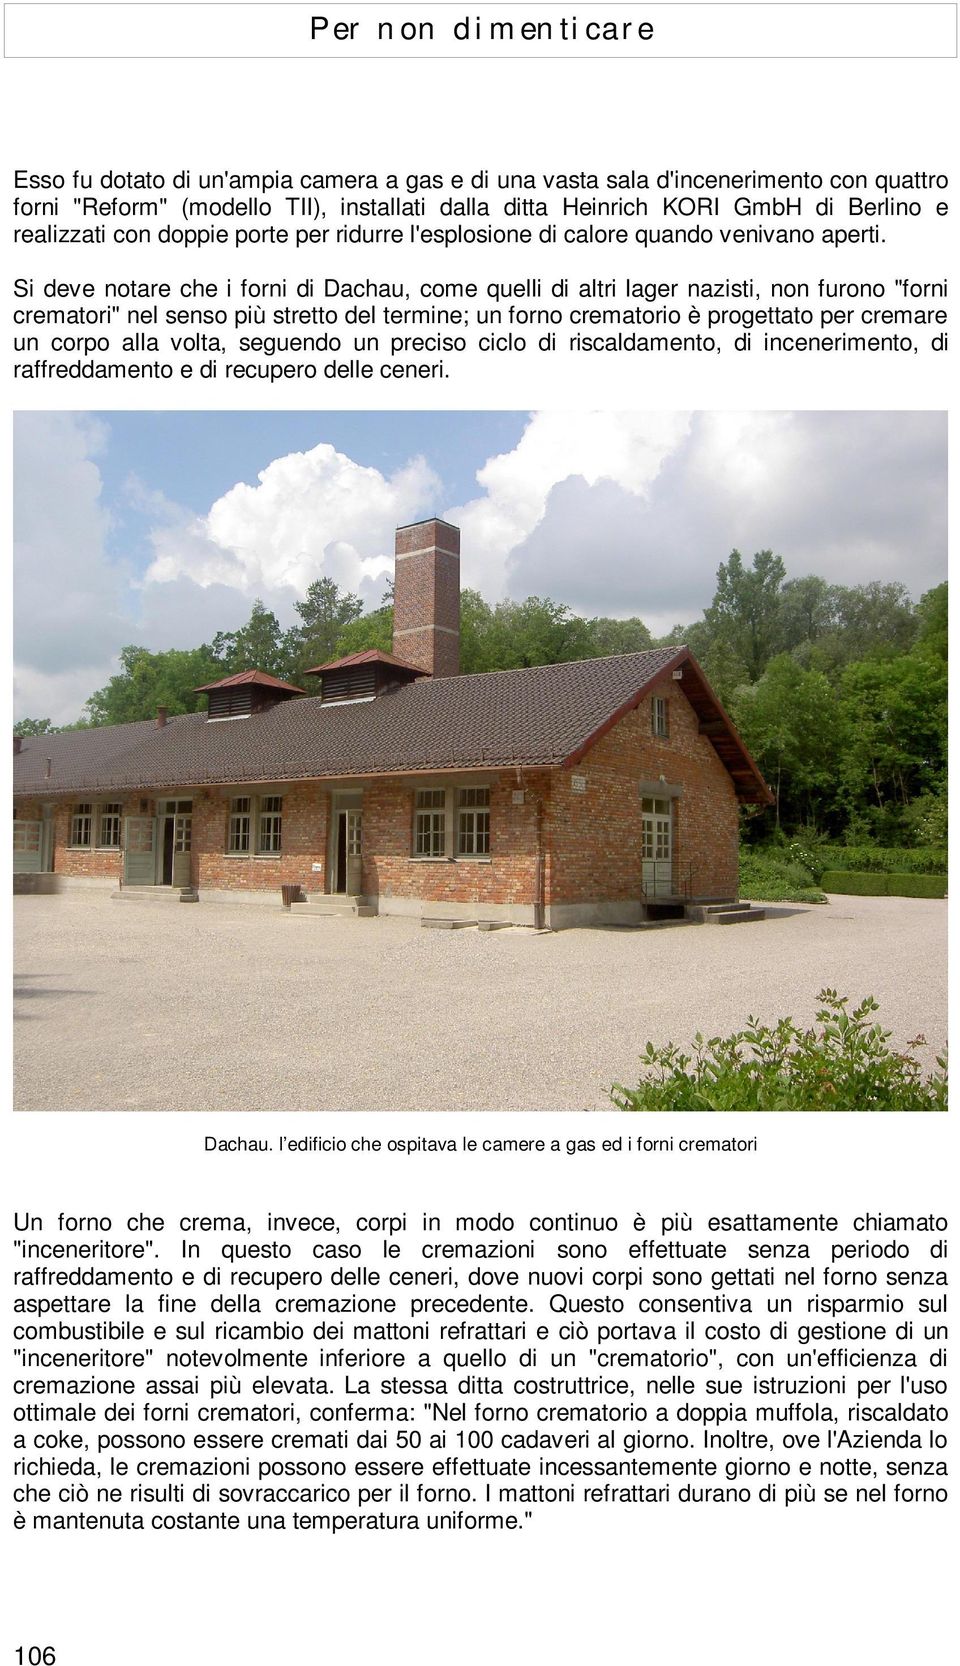 Si deve notare che i forni di Dachau, come quelli di altri lager nazisti, non furono "forni crematori" nel senso più stretto del termine; un forno crematorio è progettato per cremare un corpo alla